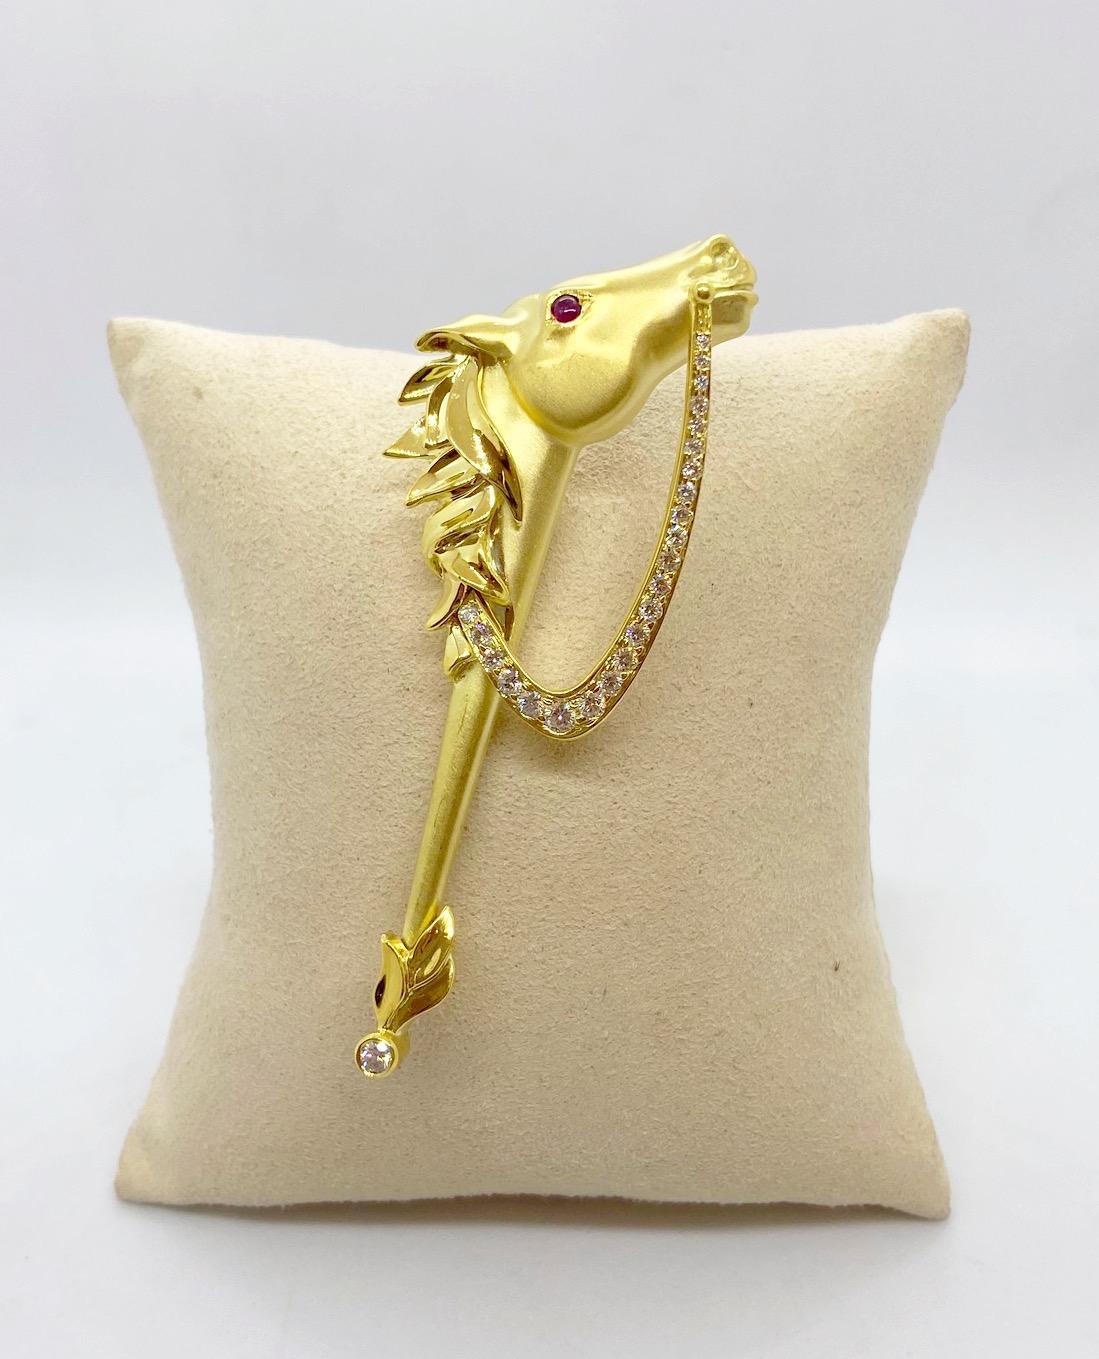 gold horse brooch